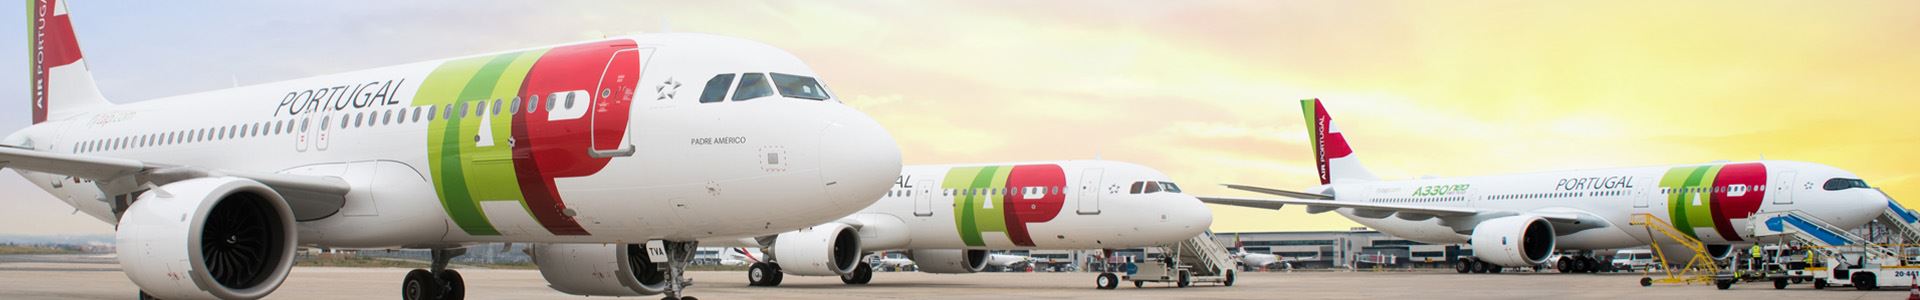 Foto que muestra tres aviones dispuestos uno al lado del otro, decorados con los colores y el logotipo de TAP Air Portugal.